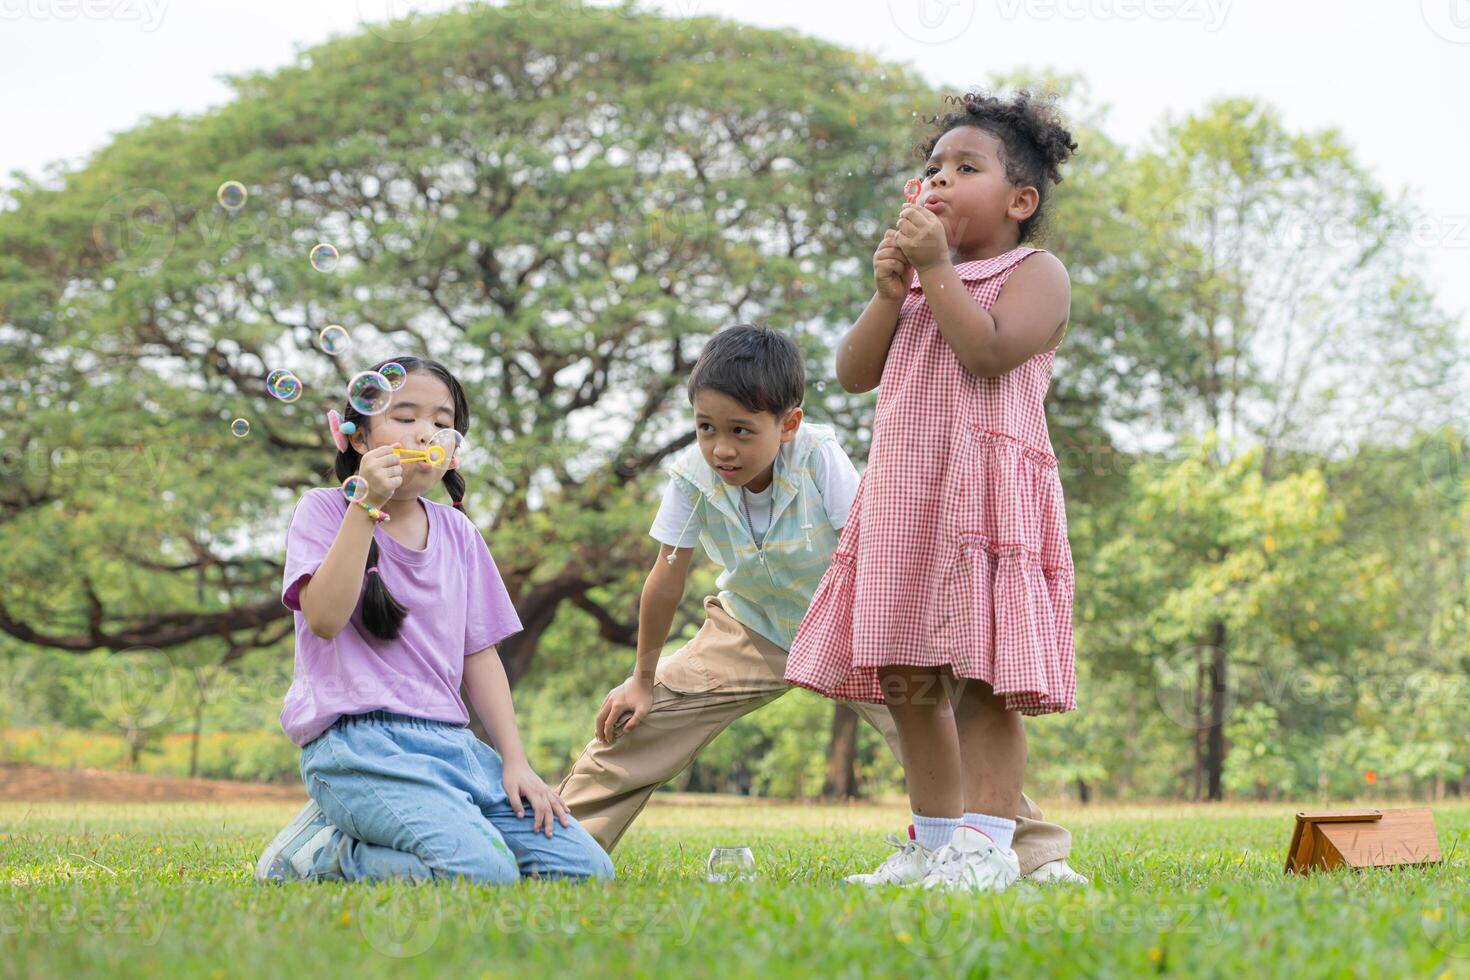 niños sentado en el parque con soplo aire burbuja, rodeado por verdor y naturaleza foto